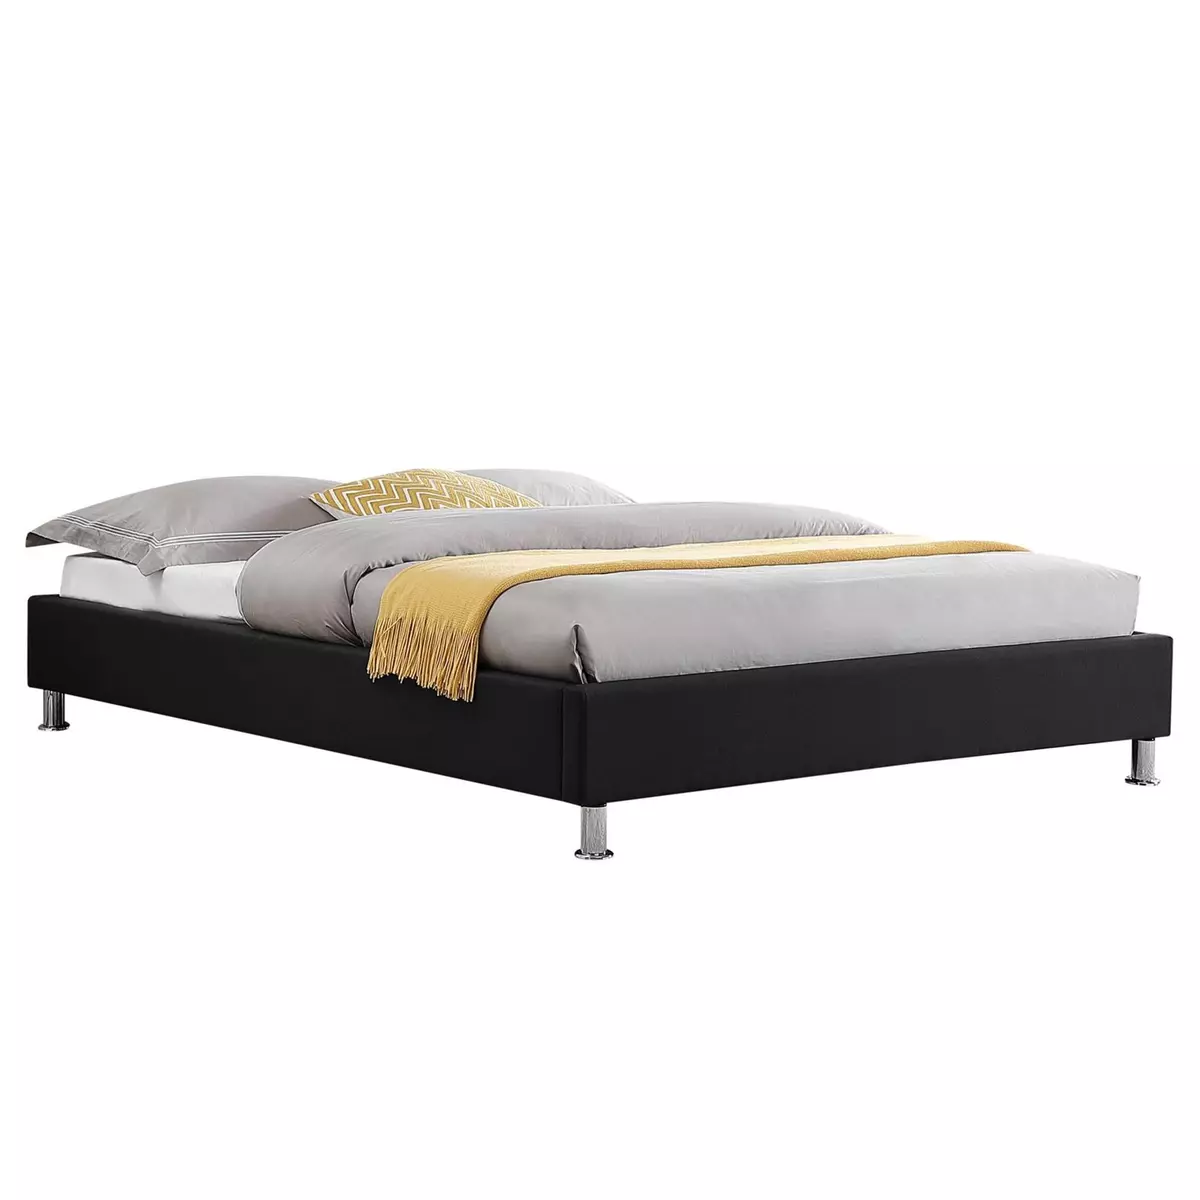 IDIMEX Lit futon double pour adulte NIZZA 140x190 cm 2 places / 2 personnes, avec sommier et pieds en métal chromé, tissu noir